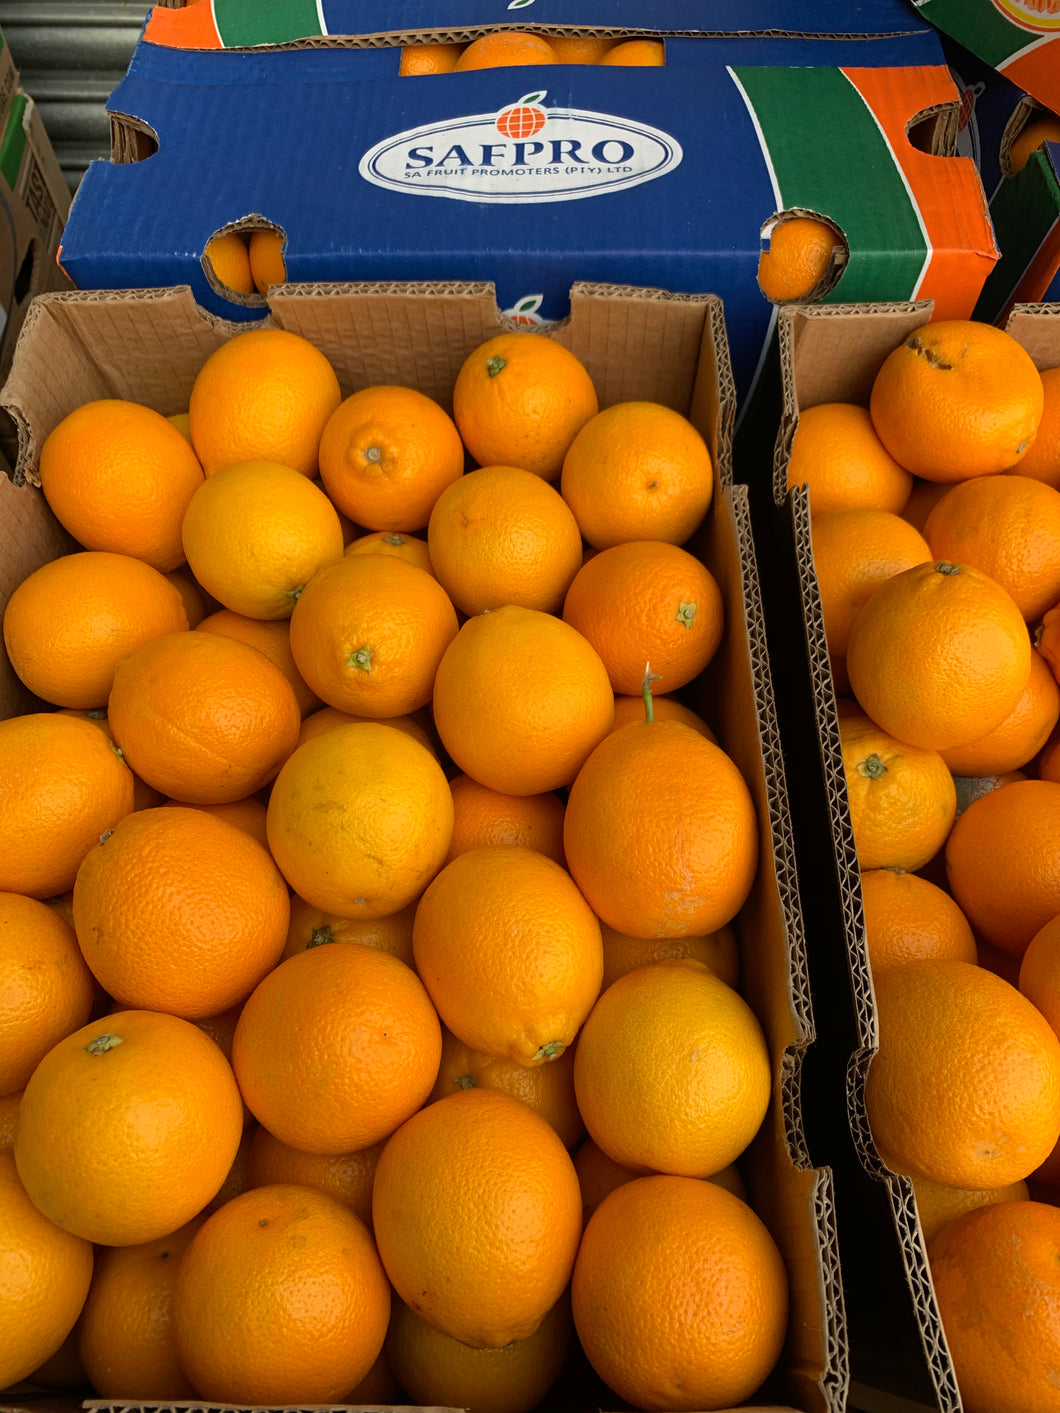 Juicing oranges (Class 2) - 60-100 oranges